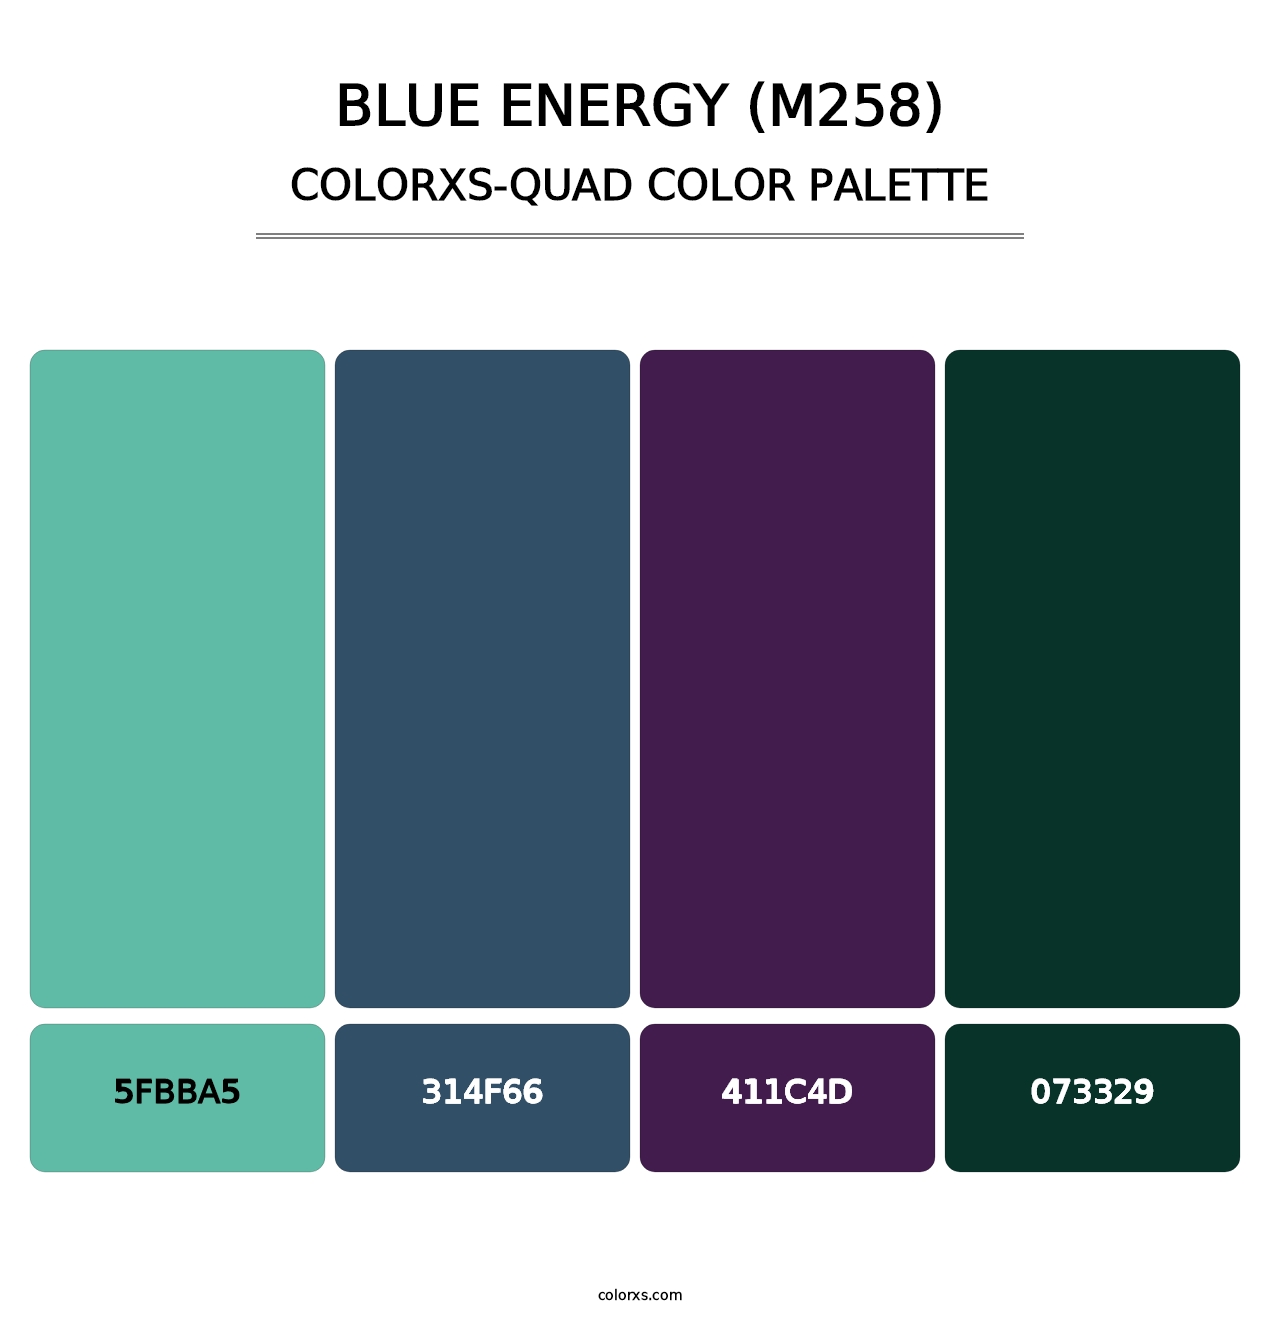 Blue Energy (M258) - Colorxs Quad Palette